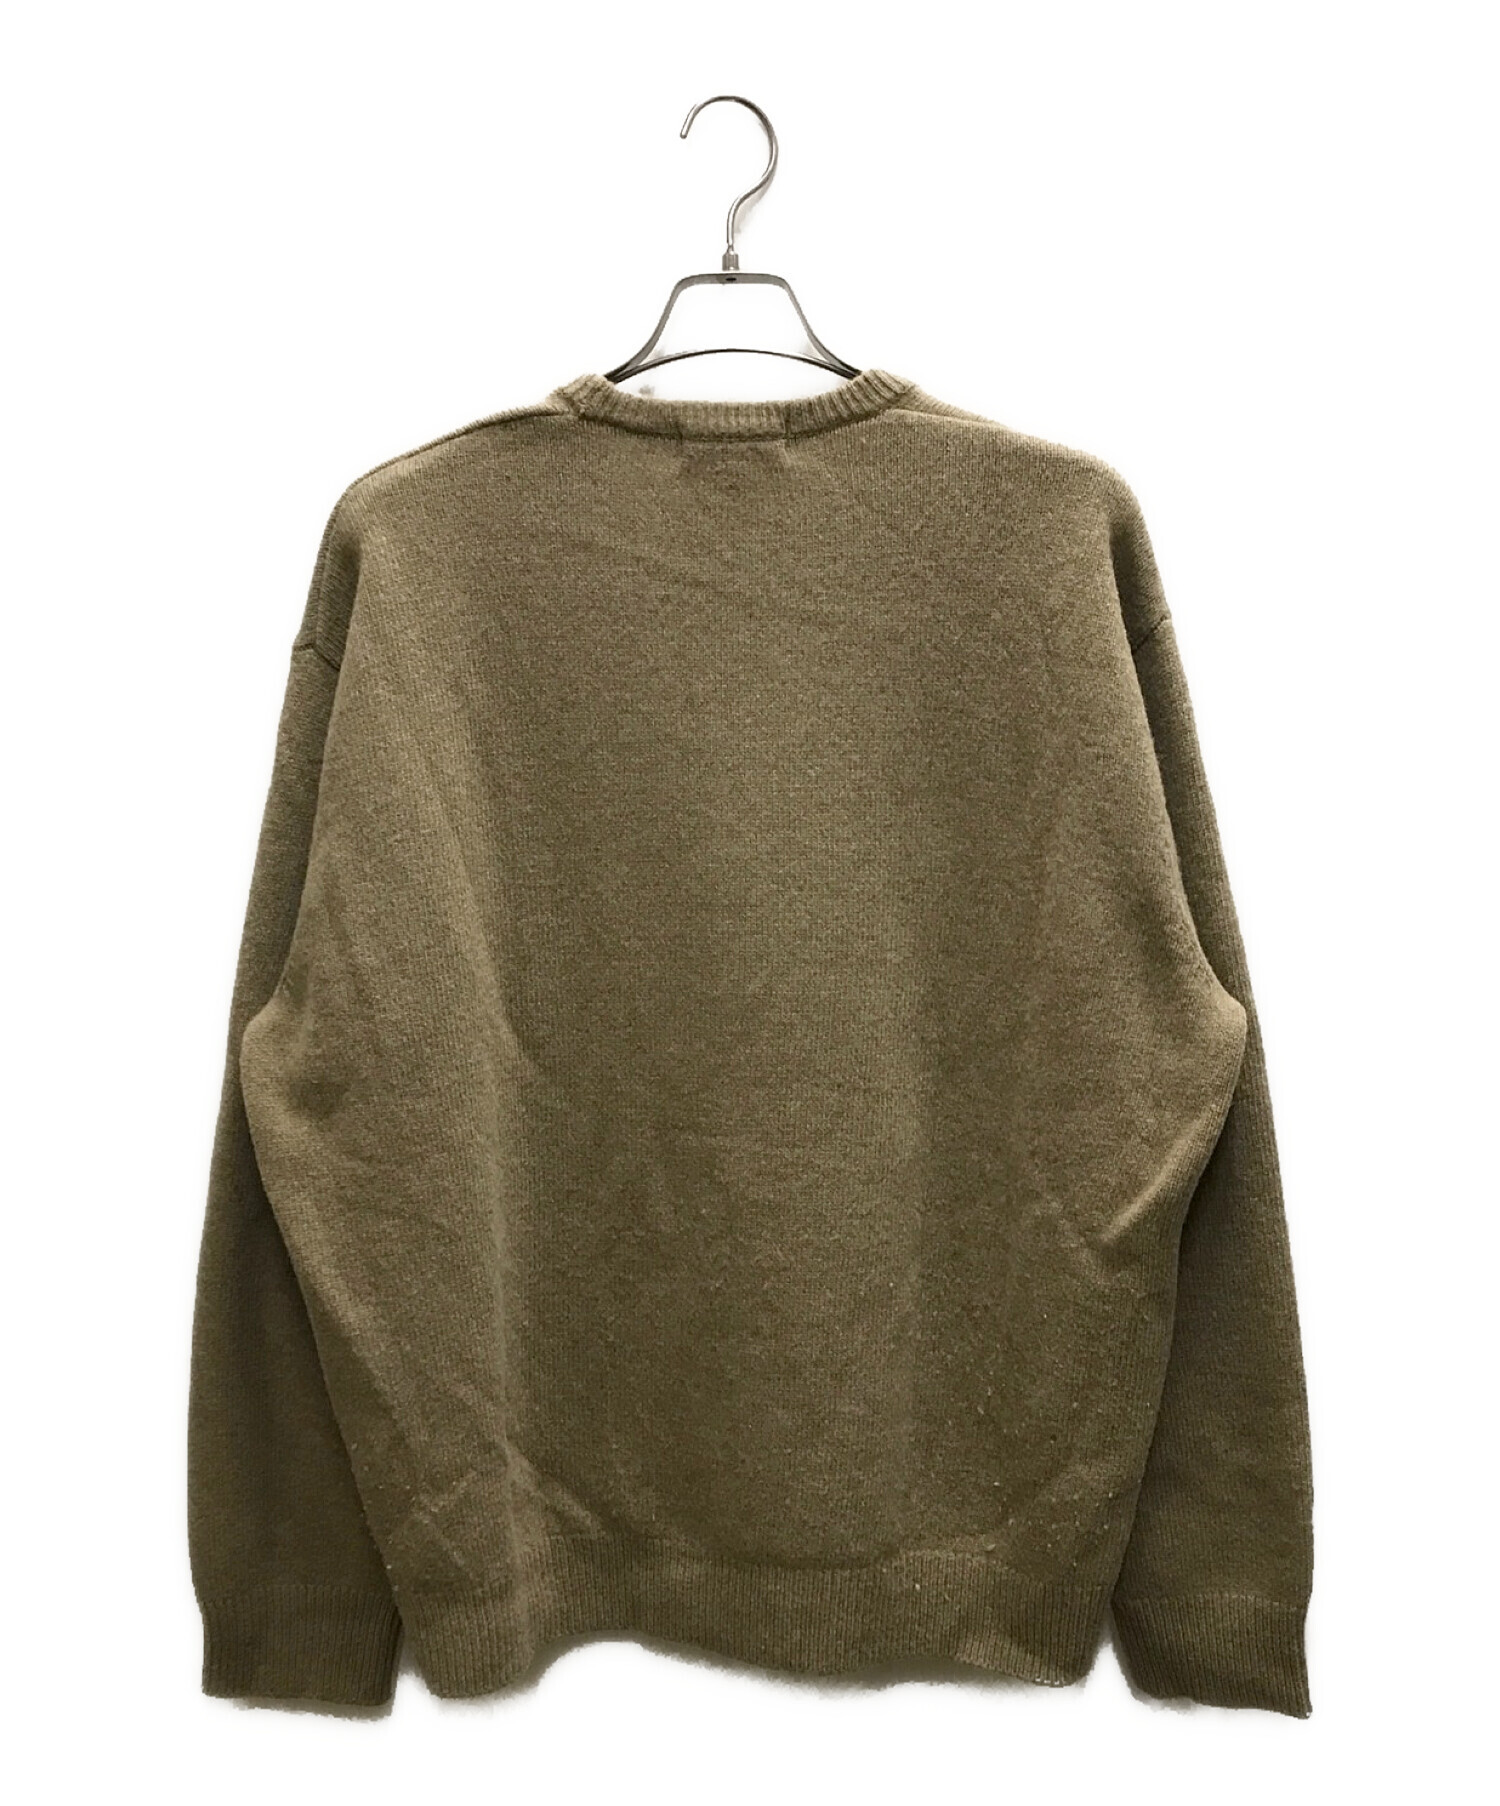 【希少】Supreme Doughboy Sweater Beige Lサイズ